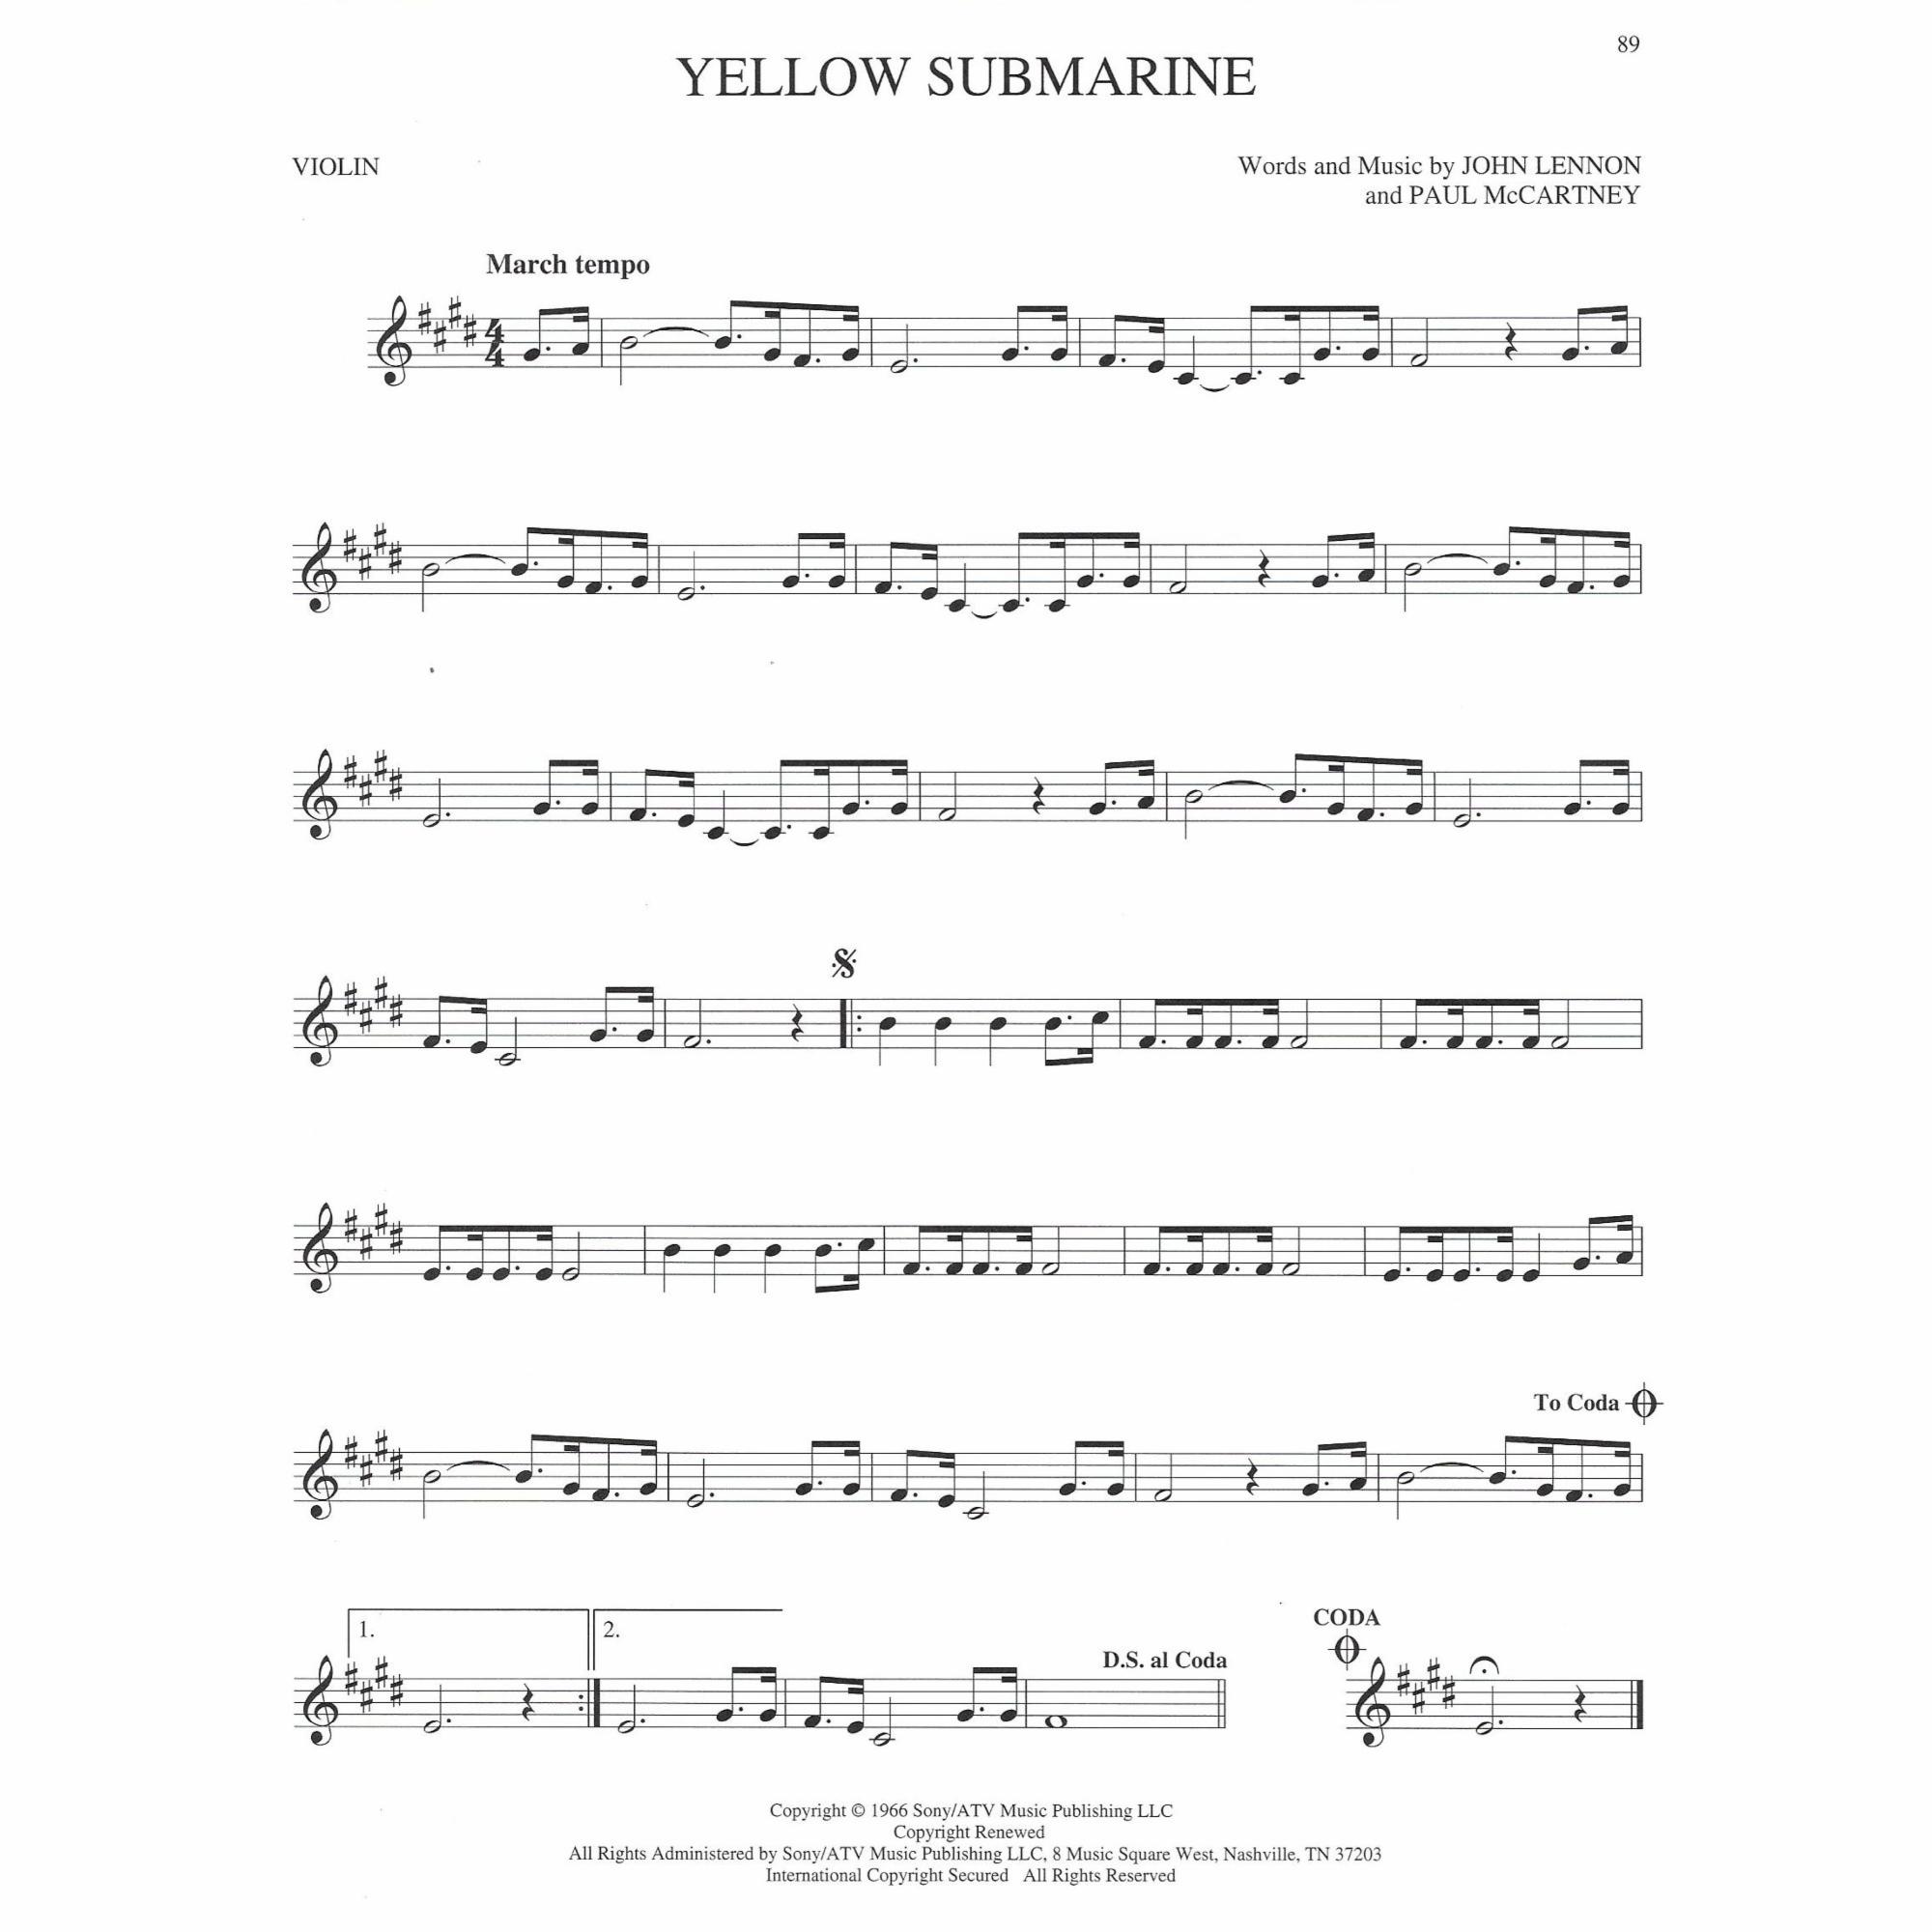 Sample: Violin (Pg. 89)